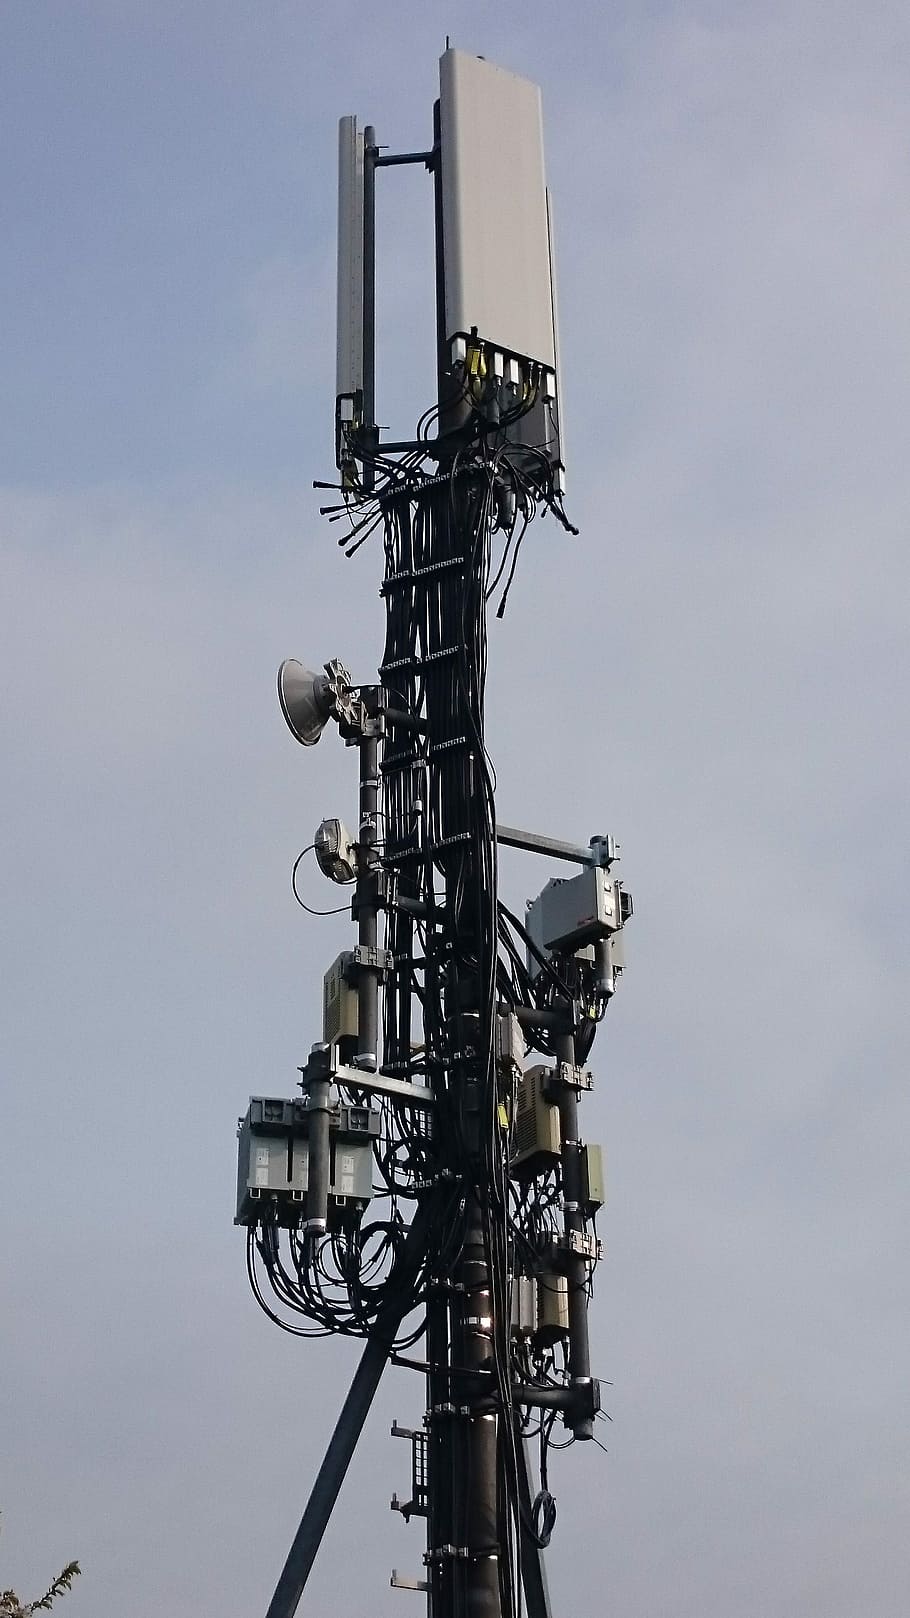 Antenas, Antena, Radio, Mástil, torre de transmisión, antena de radio, tecnología, comunicación, envío, mástiles